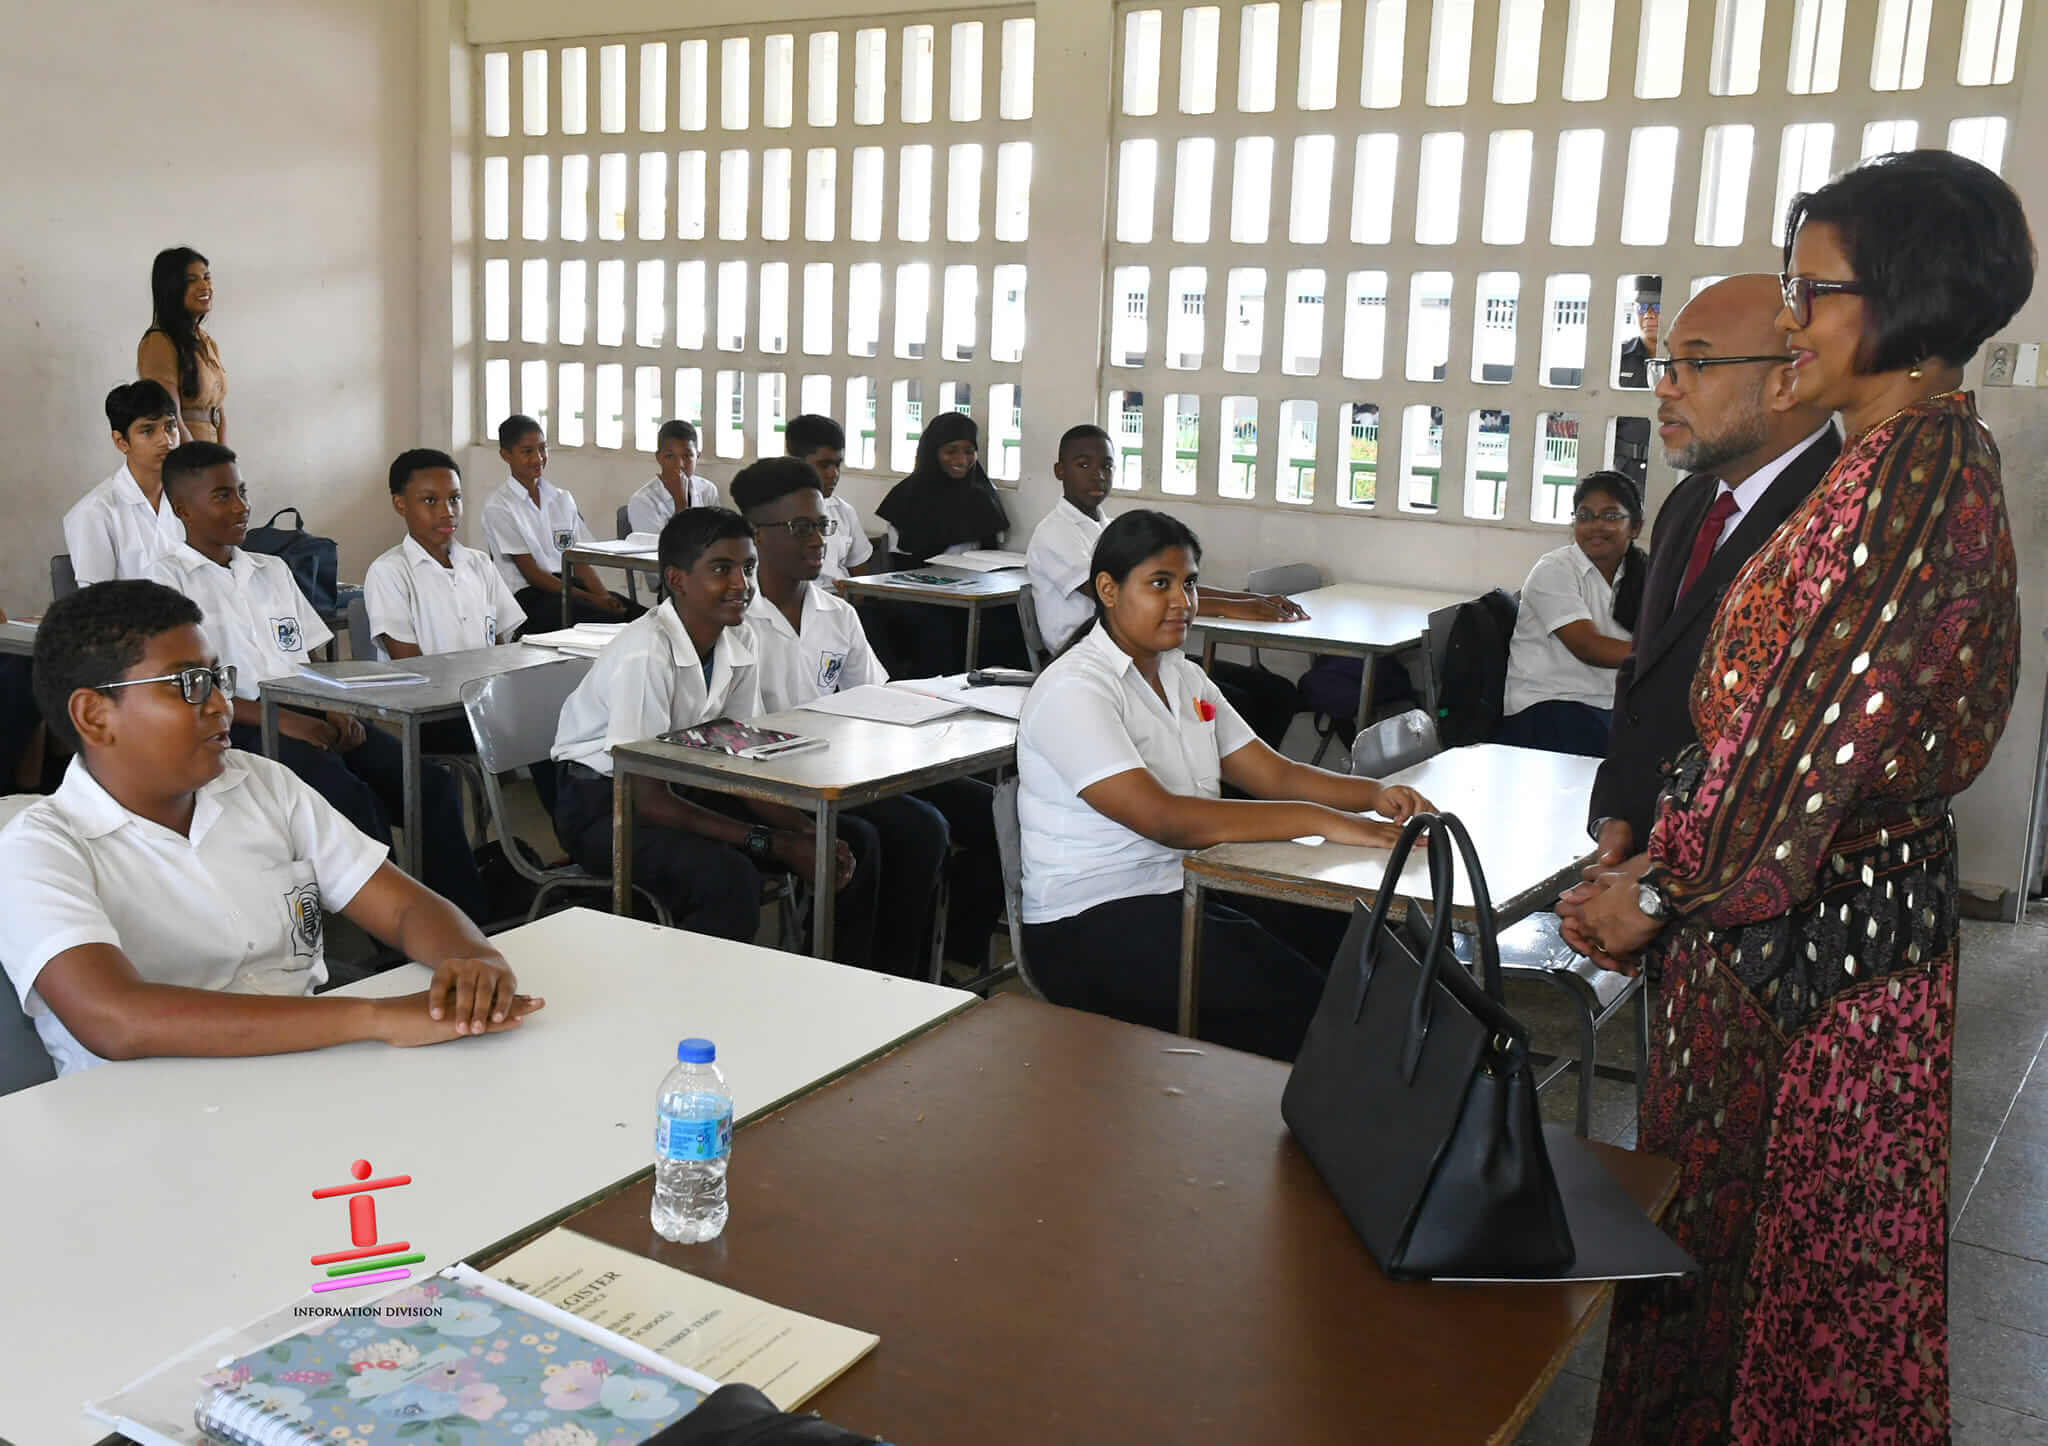 Their Excellencies visit Schools in Central Trinidad